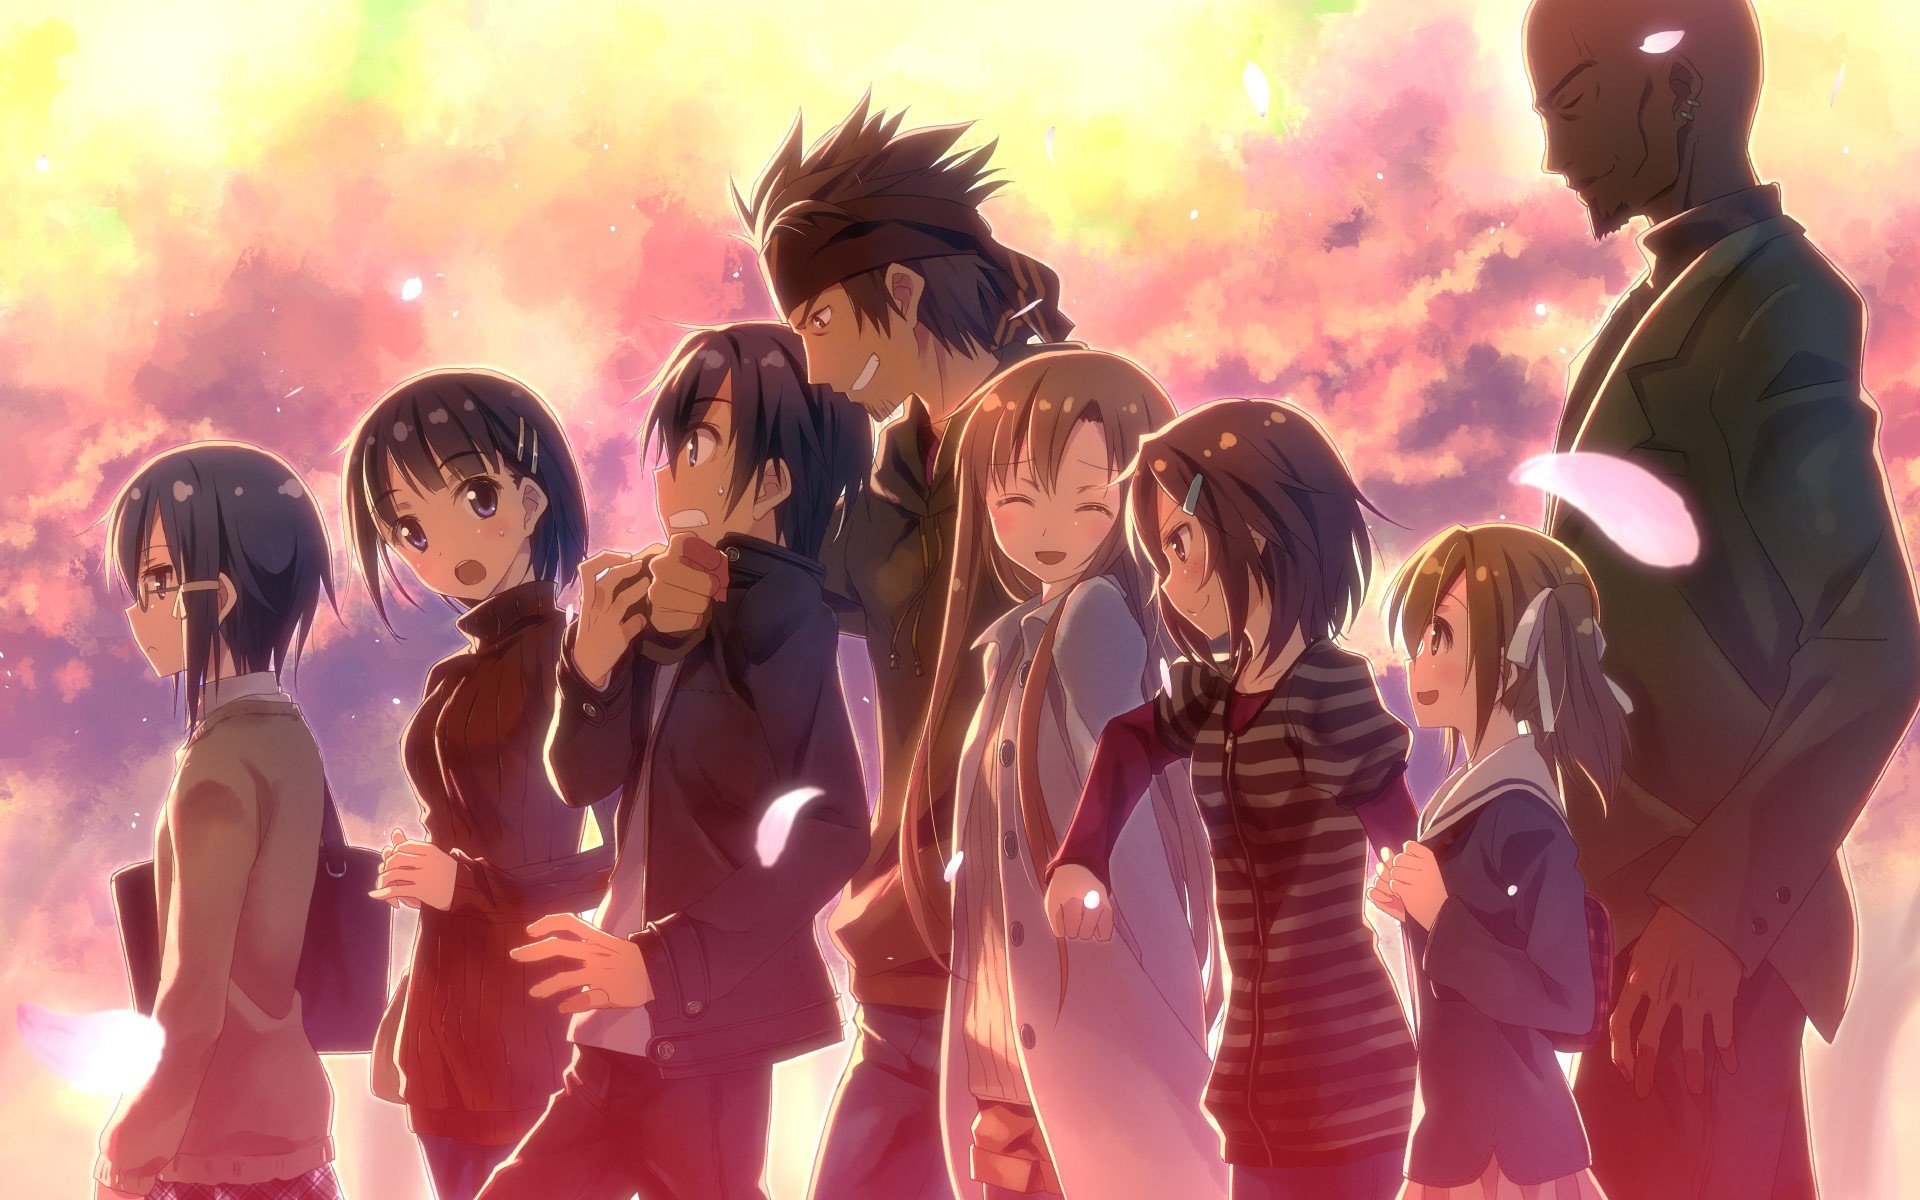 anime, Kirigaya Kazuto, Asada Shino, Kirigaya Suguha, Yuuki Asuna, Shinozaki Rika, Ayano Keiko, Sword Art Online Wallpaper